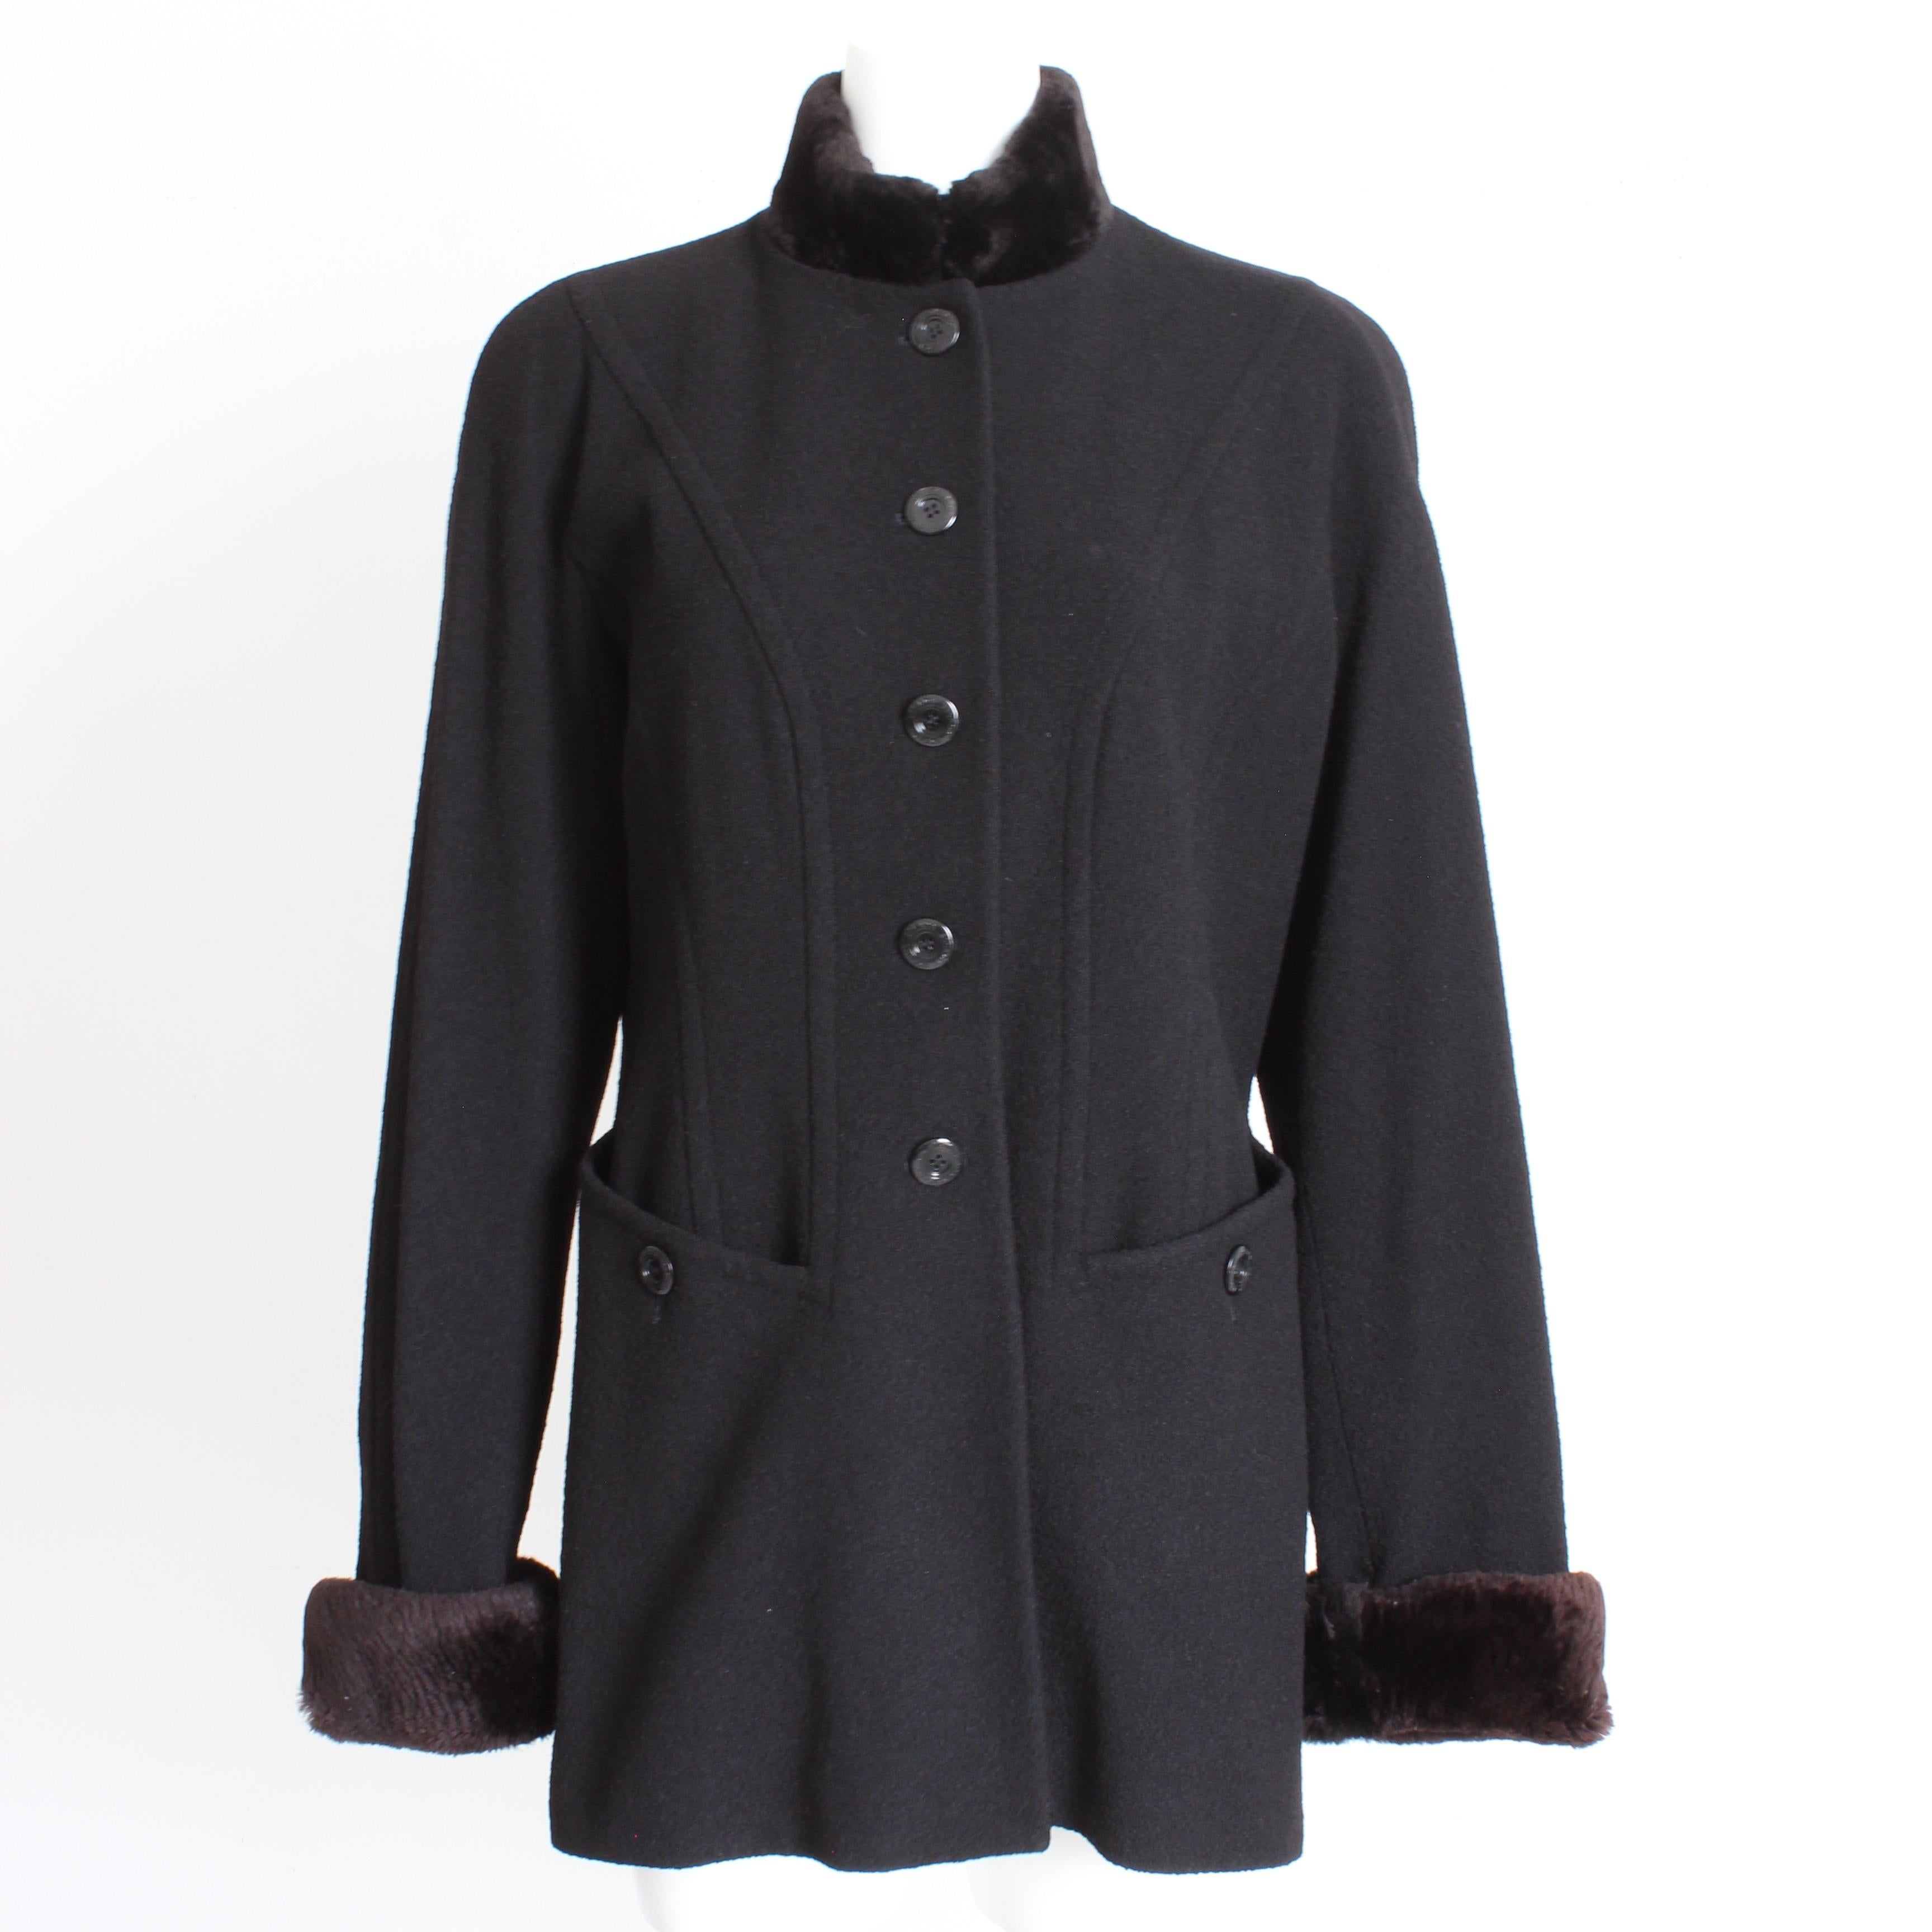 Authentische, gebrauchte Escada Jacke oder Mantel, wahrscheinlich aus den 1990er Jahren. Er ist aus schwarzem Wollmischgewebe gefertigt und mit einem abnehmbaren braunen Biberpelzbesatz versehen! 

Sie wird mit Knöpfen mit Logoprägung geschlossen